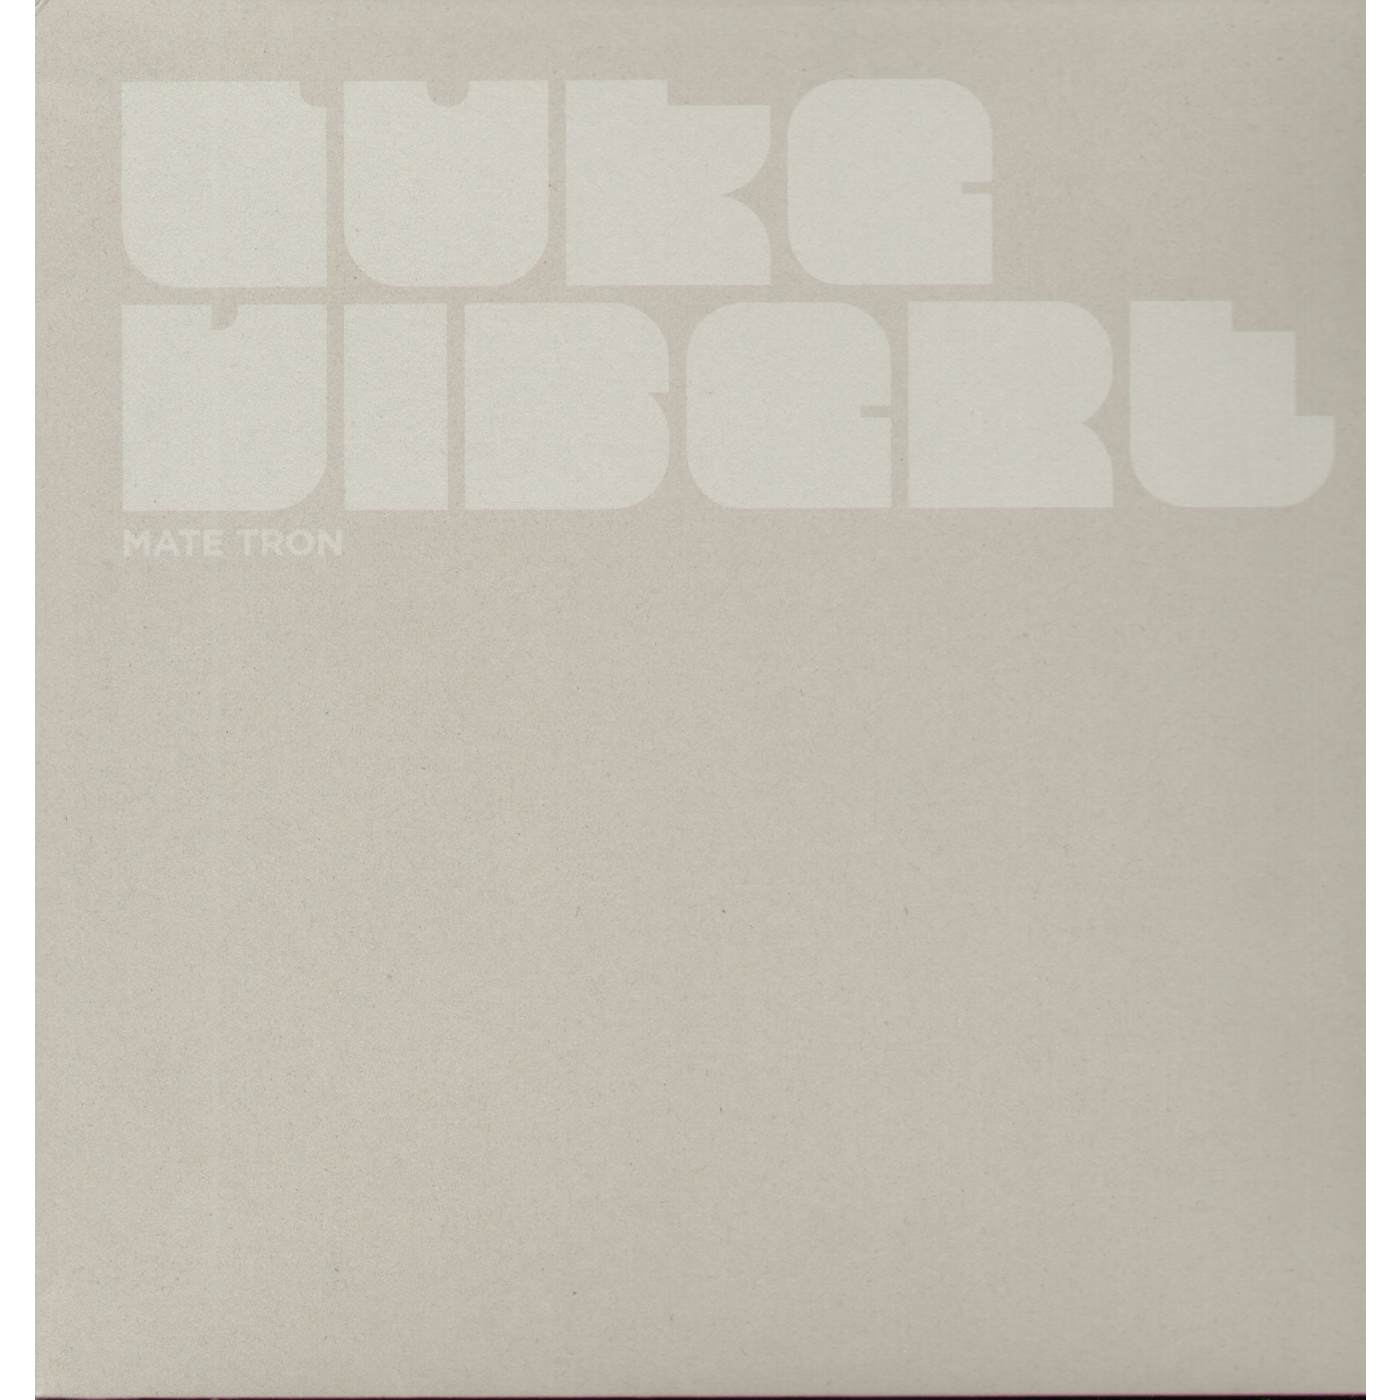 Luke Vibert Mate Tron Vinyl Record